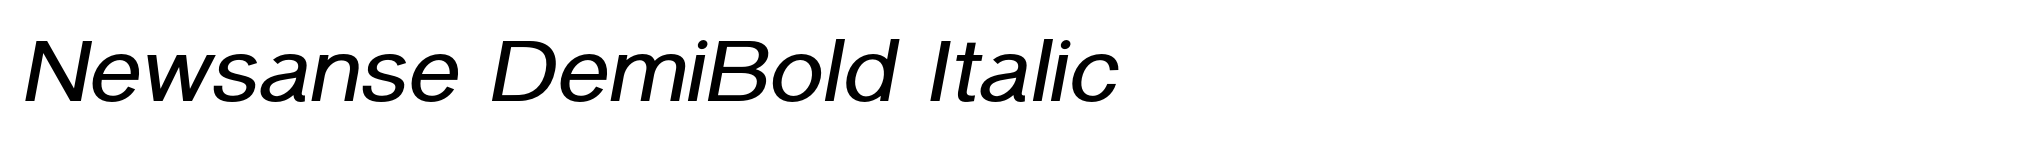 Newsanse DemiBold Italic image